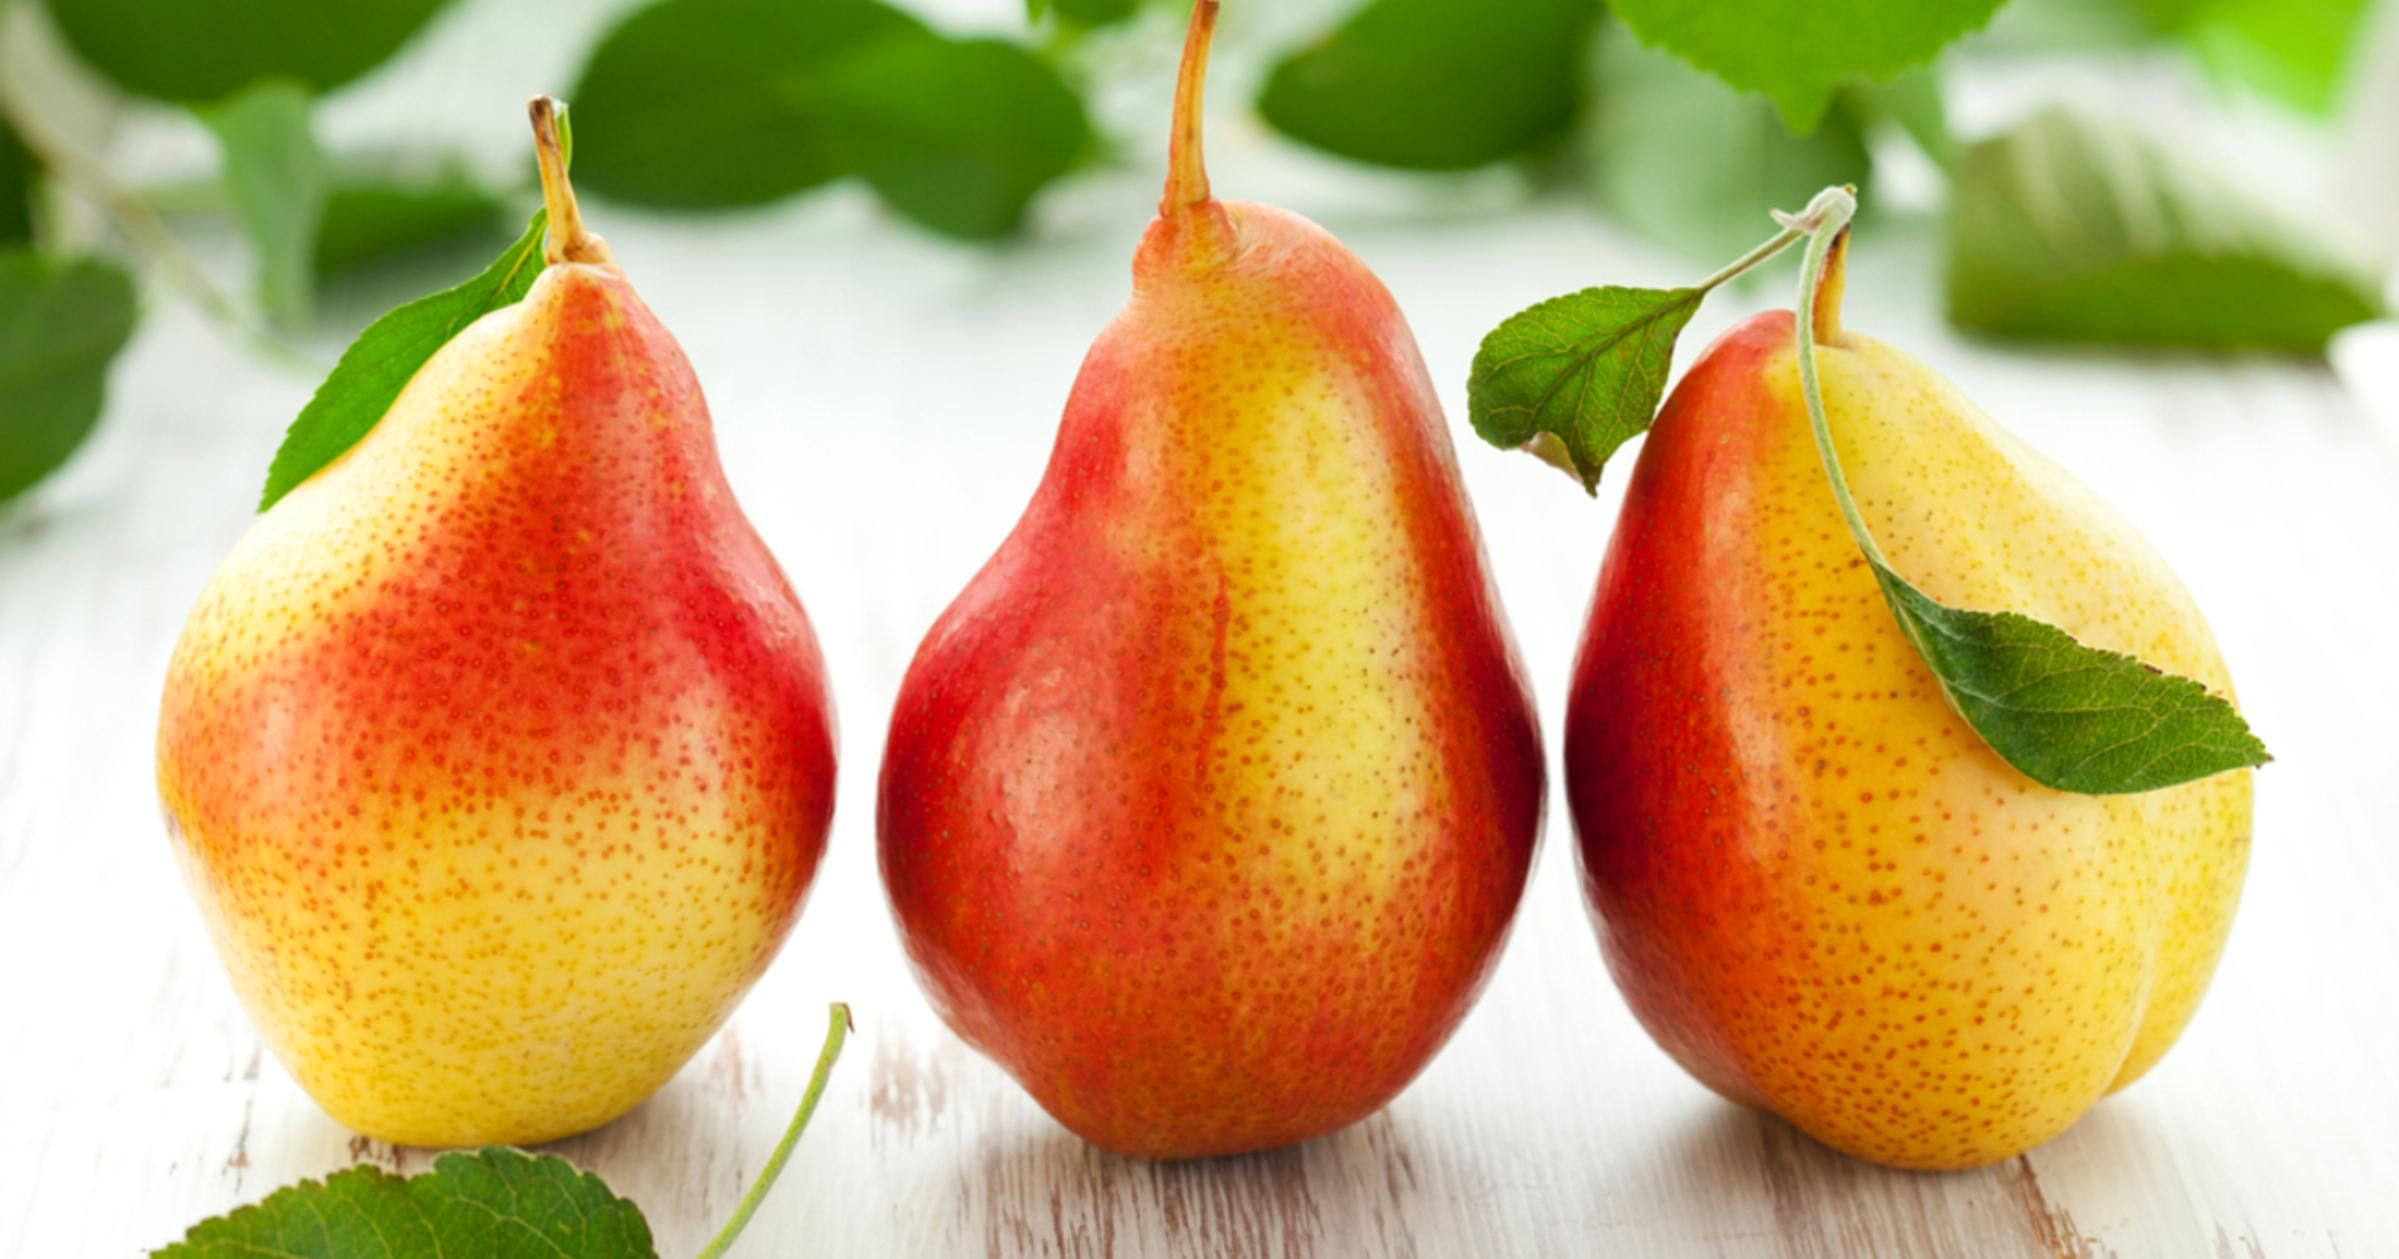 Сладкие плоды и высокий урожай: вывели новый уникальный сорт груши - Агро